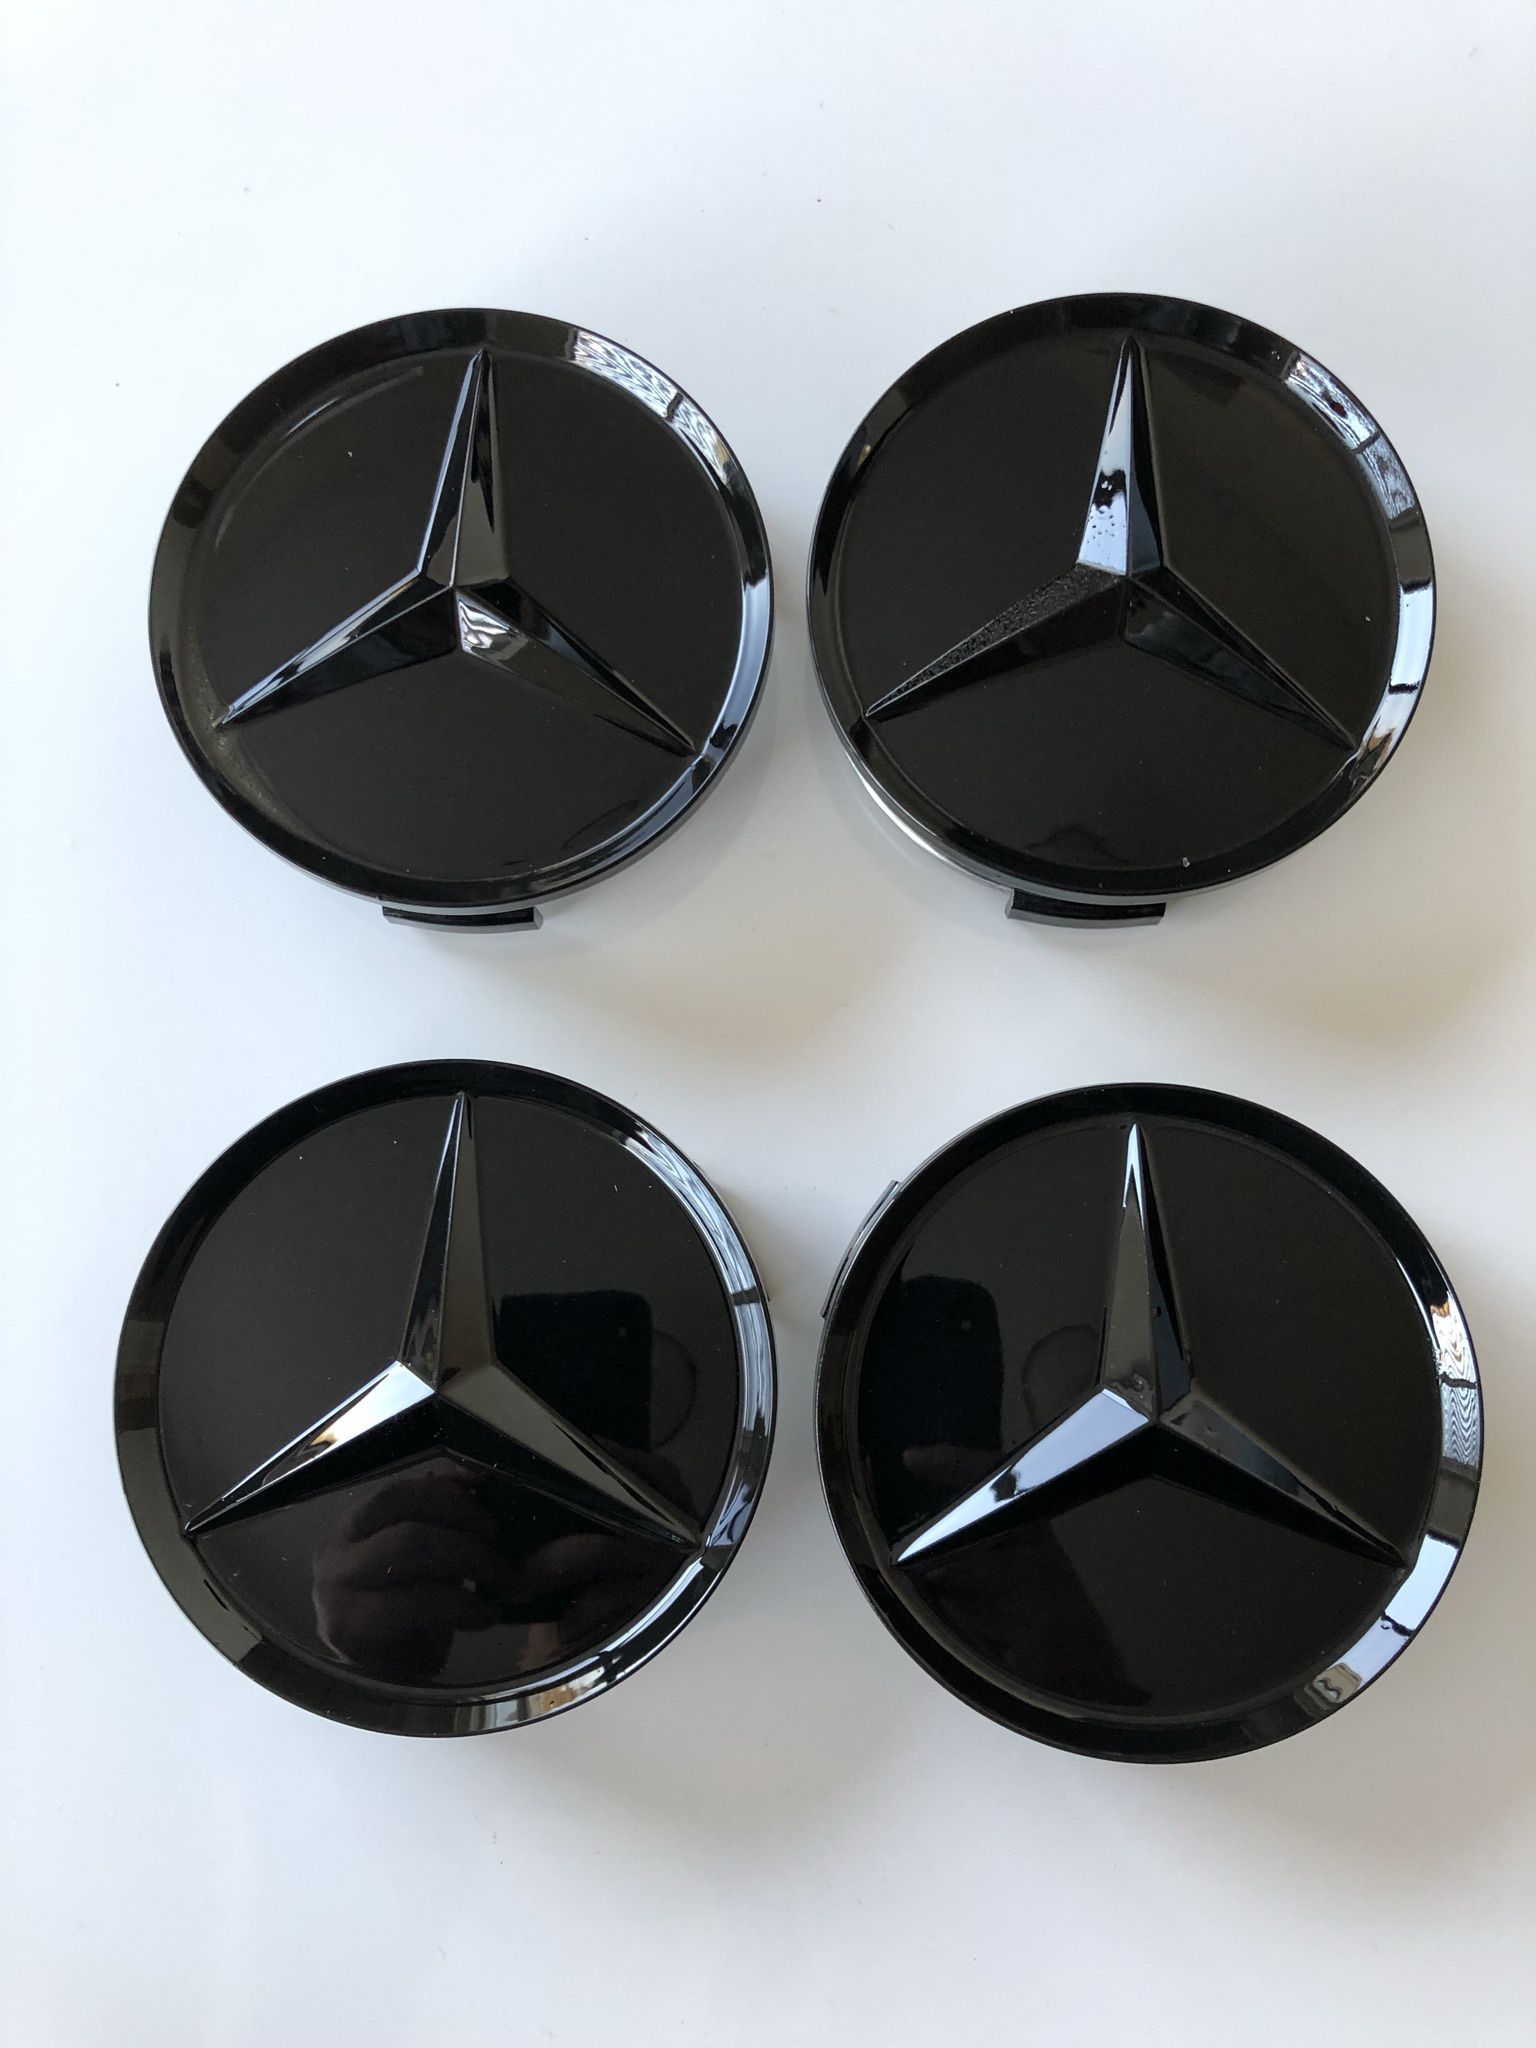 Set Of 4 For Mercedes Wheel Center Caps All Black 75mm